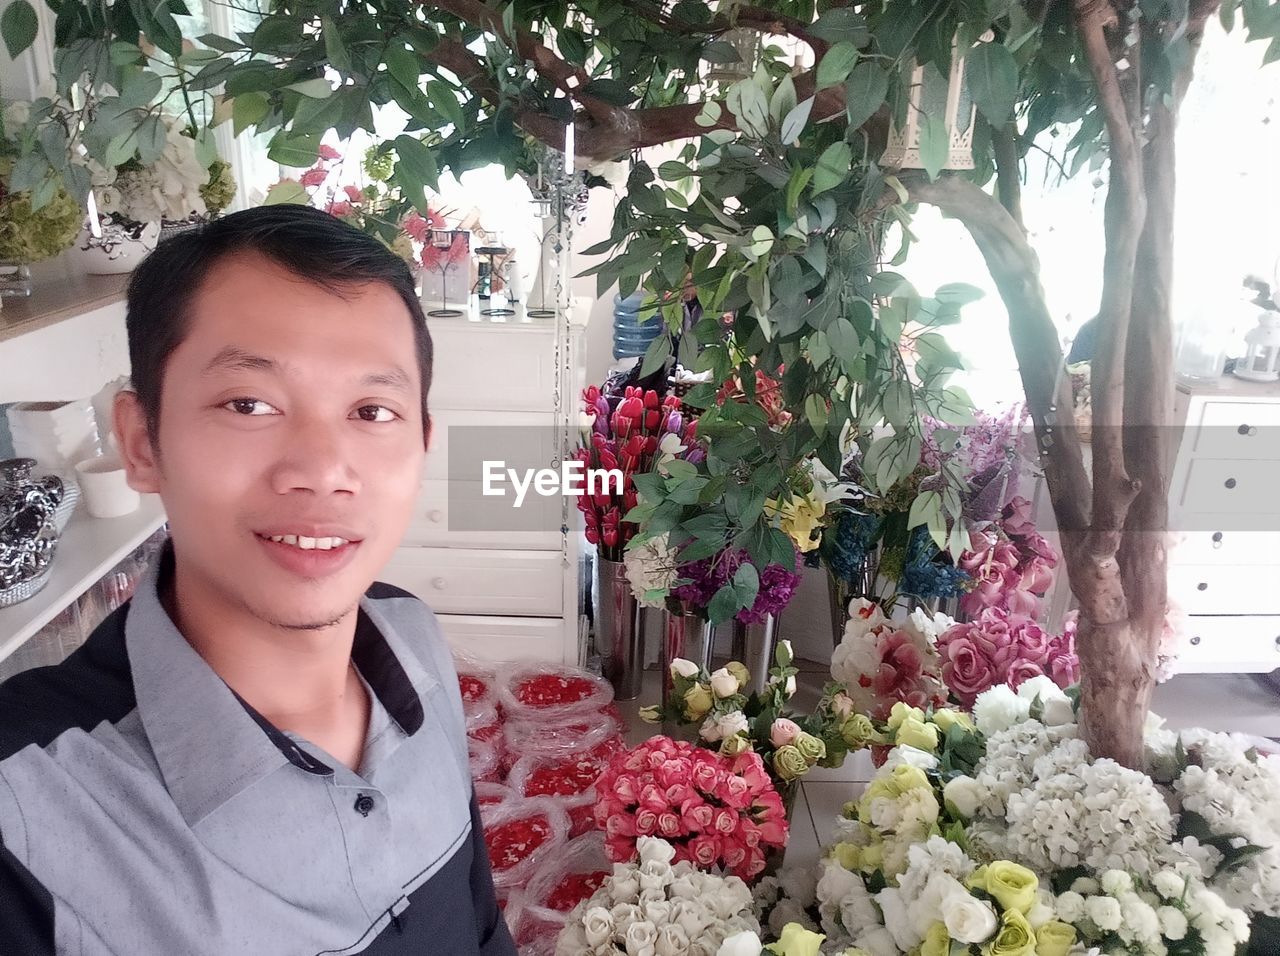 Portrait of man by flower bouquets in market